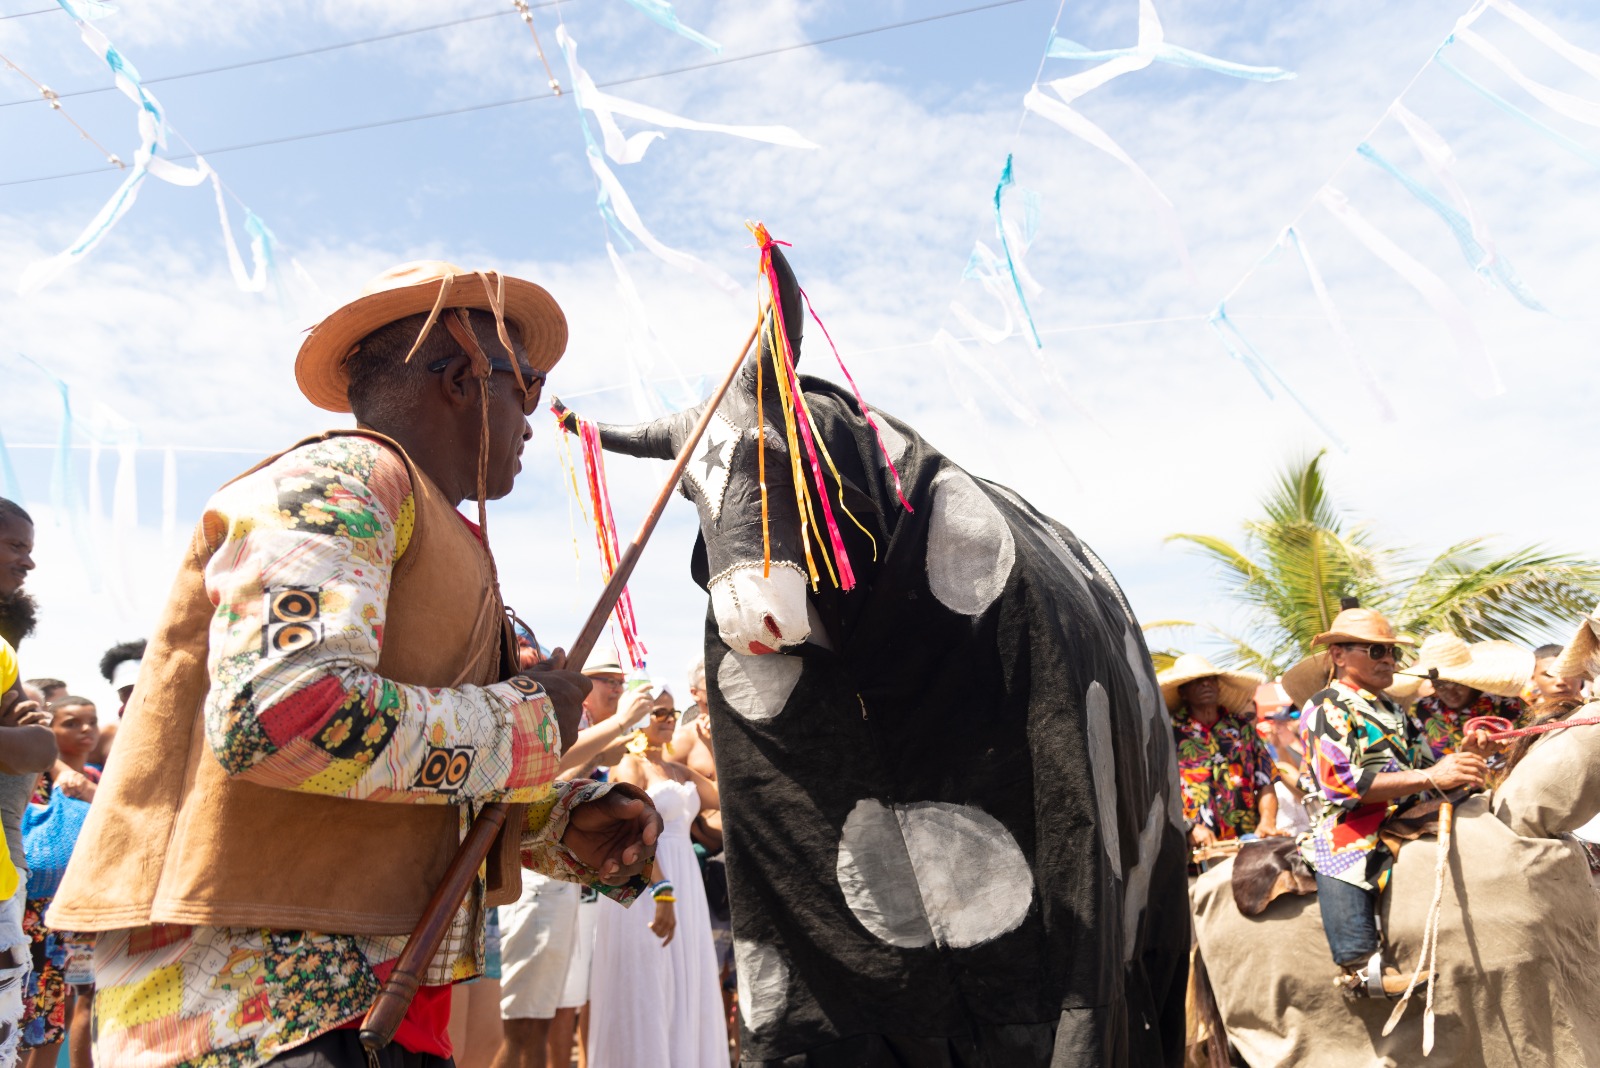 Grupo cultural tradicional do nordeste brasileiro se apresenta durante as festividades para Iemanjá na praia do Rio Vermelho